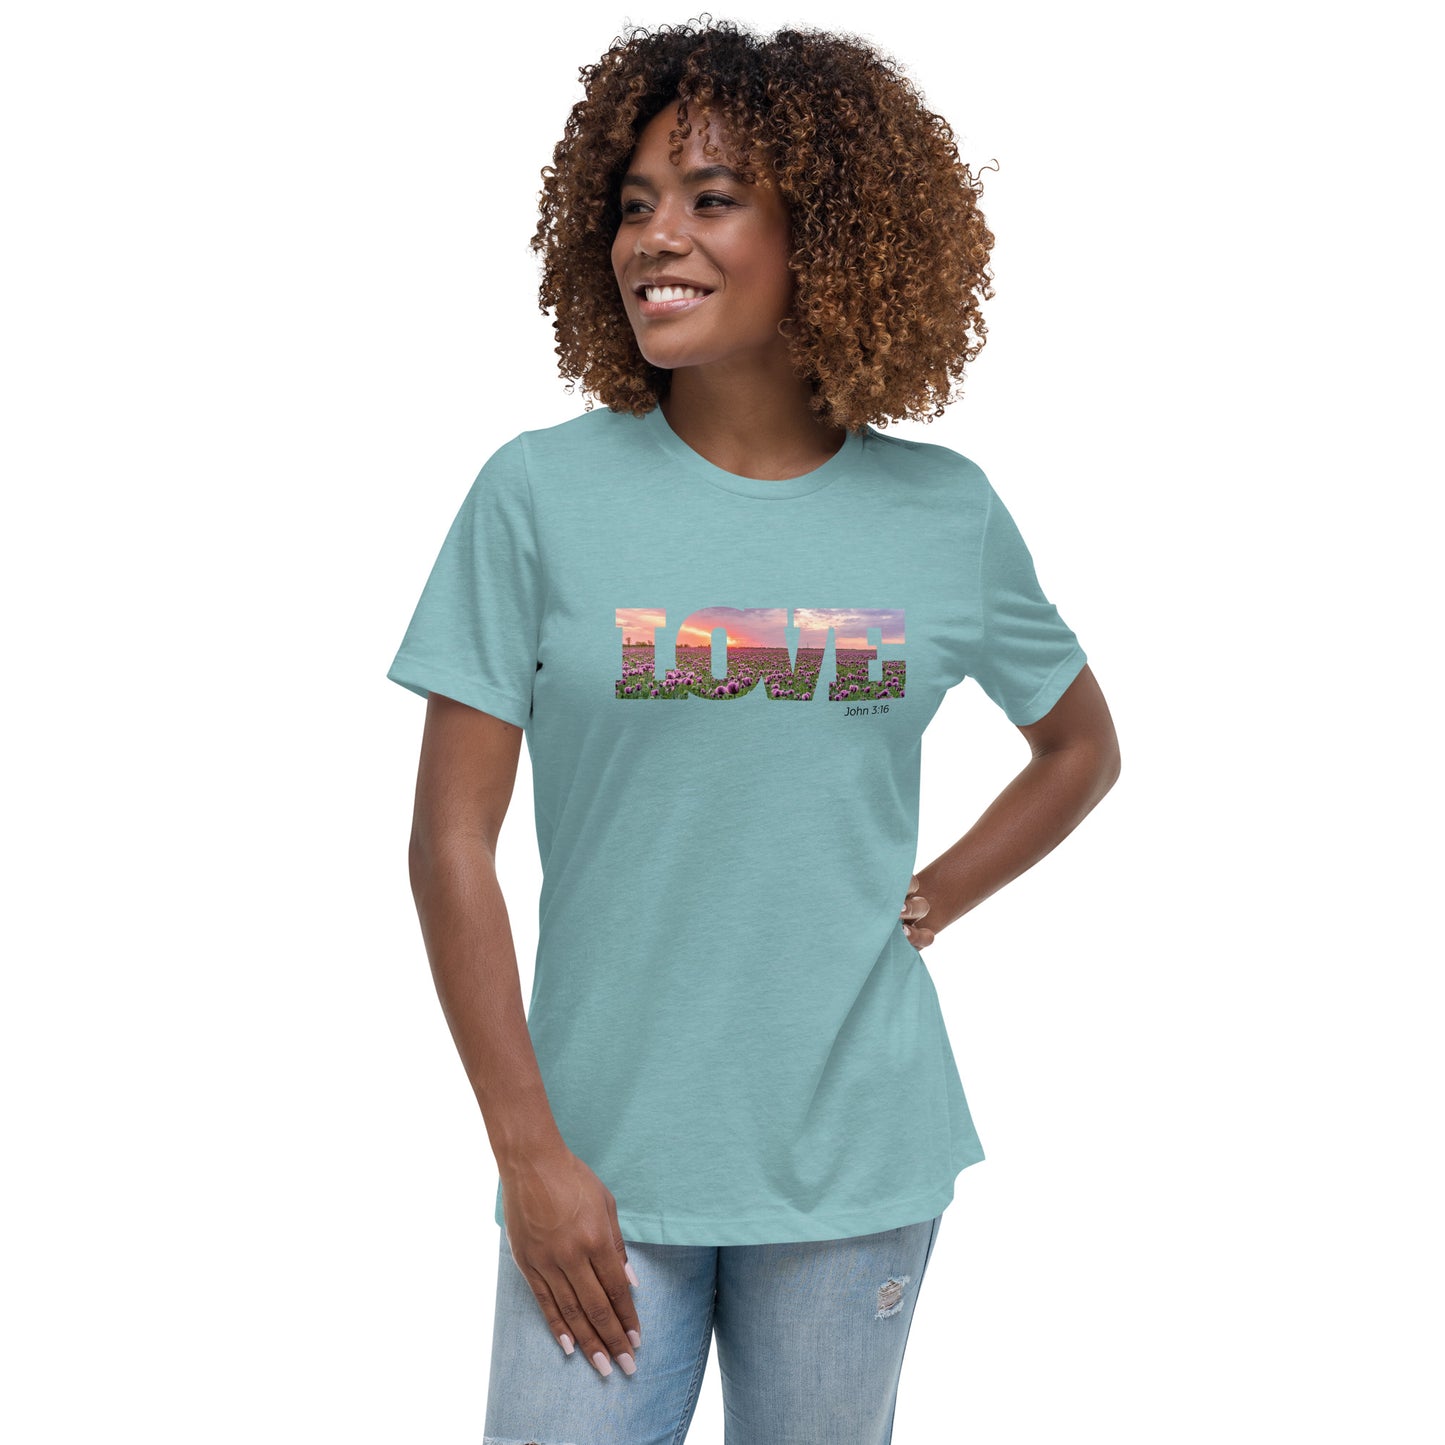 Love John 3:16 Women's Relaxed T-Shirt